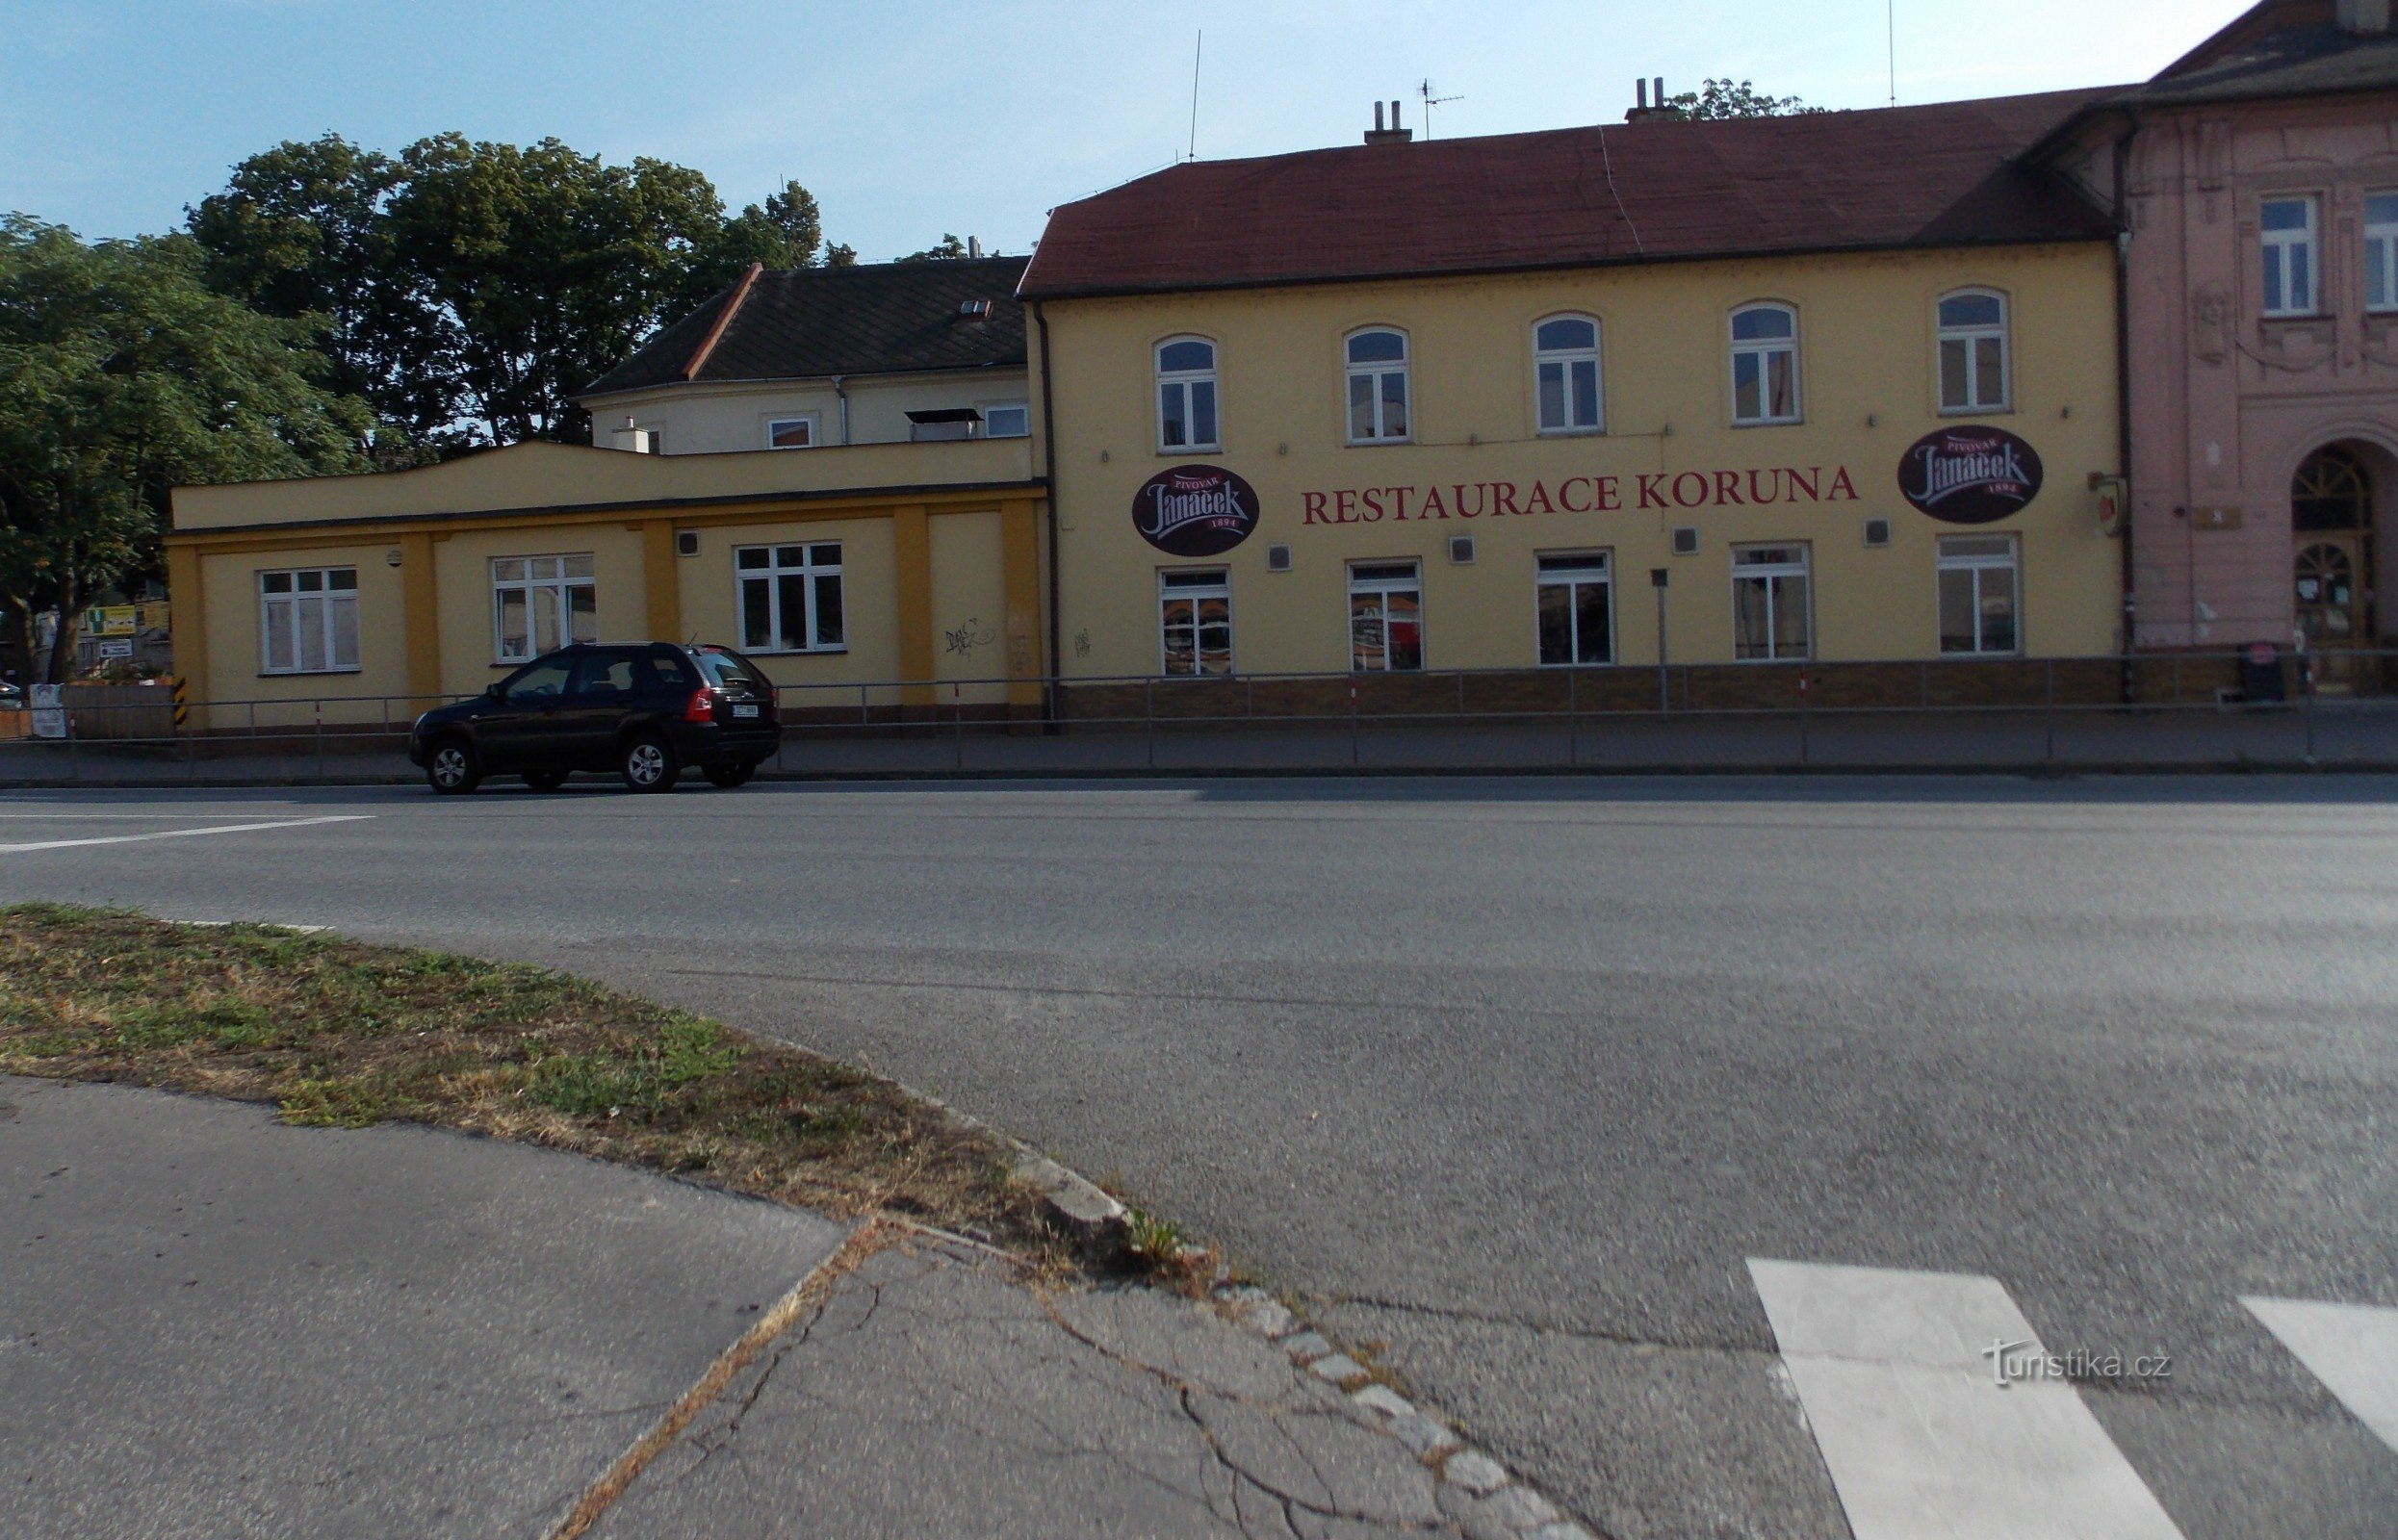 Restaurant Koruna in Uherské Hradiště